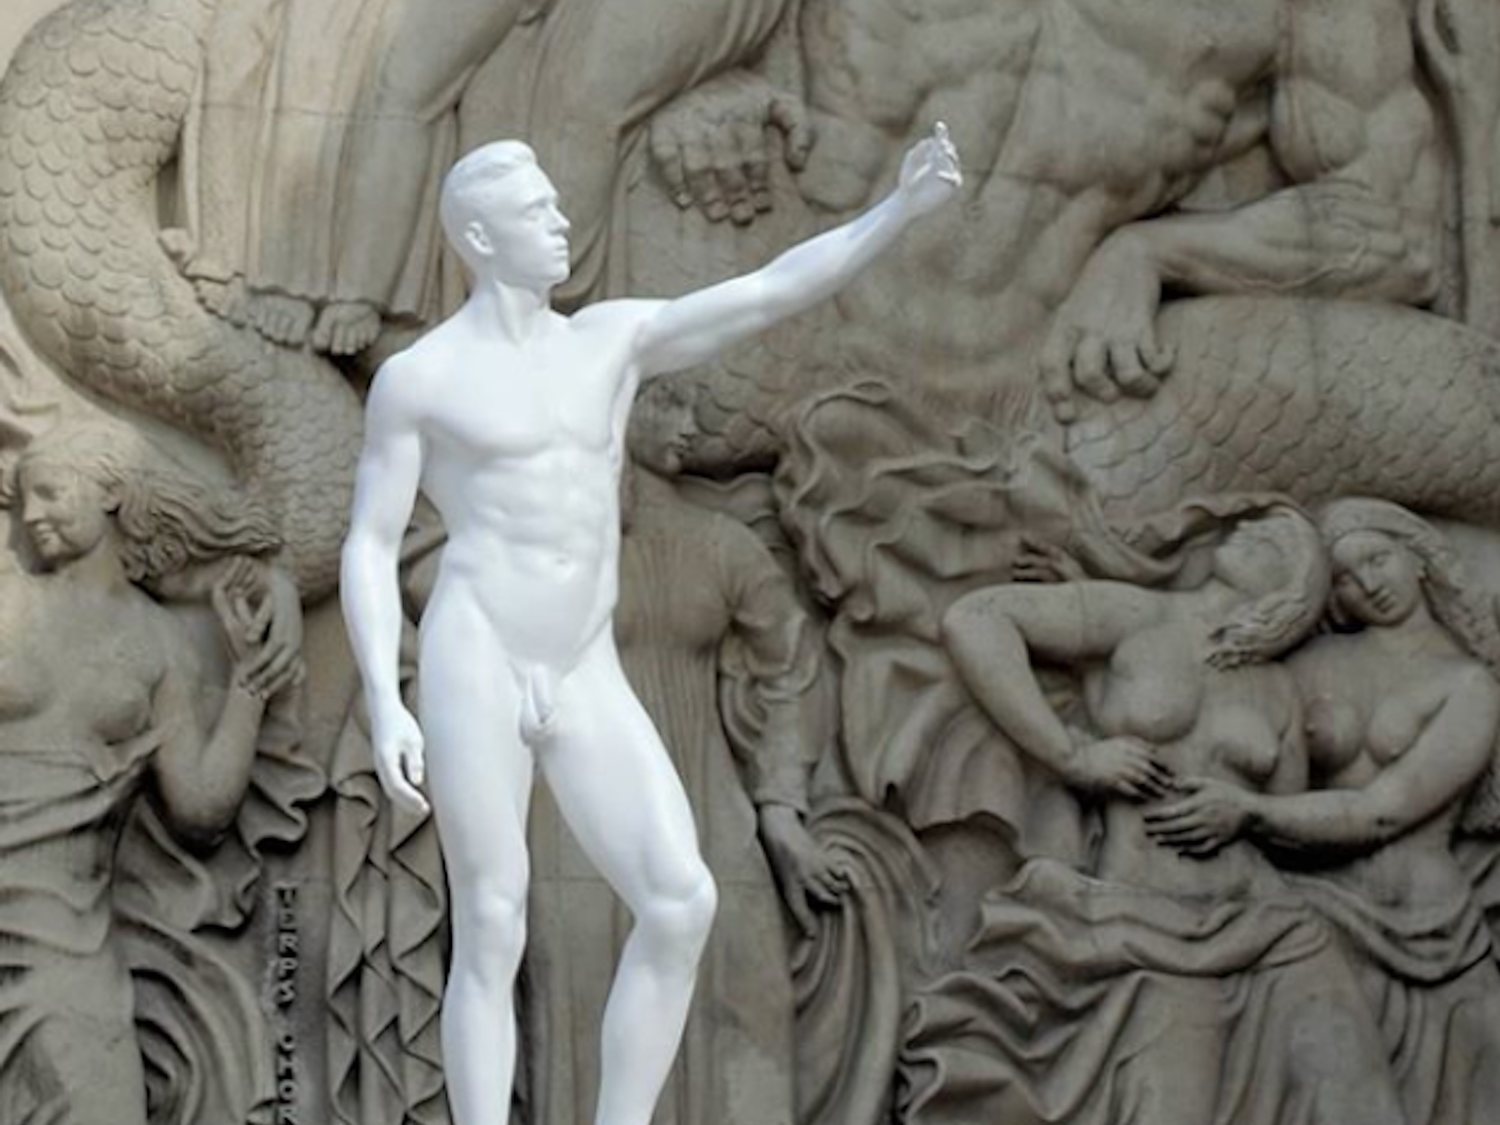 La Unesco obliga a vestir unas esculturas con tangas para no "herir sensibilidades"